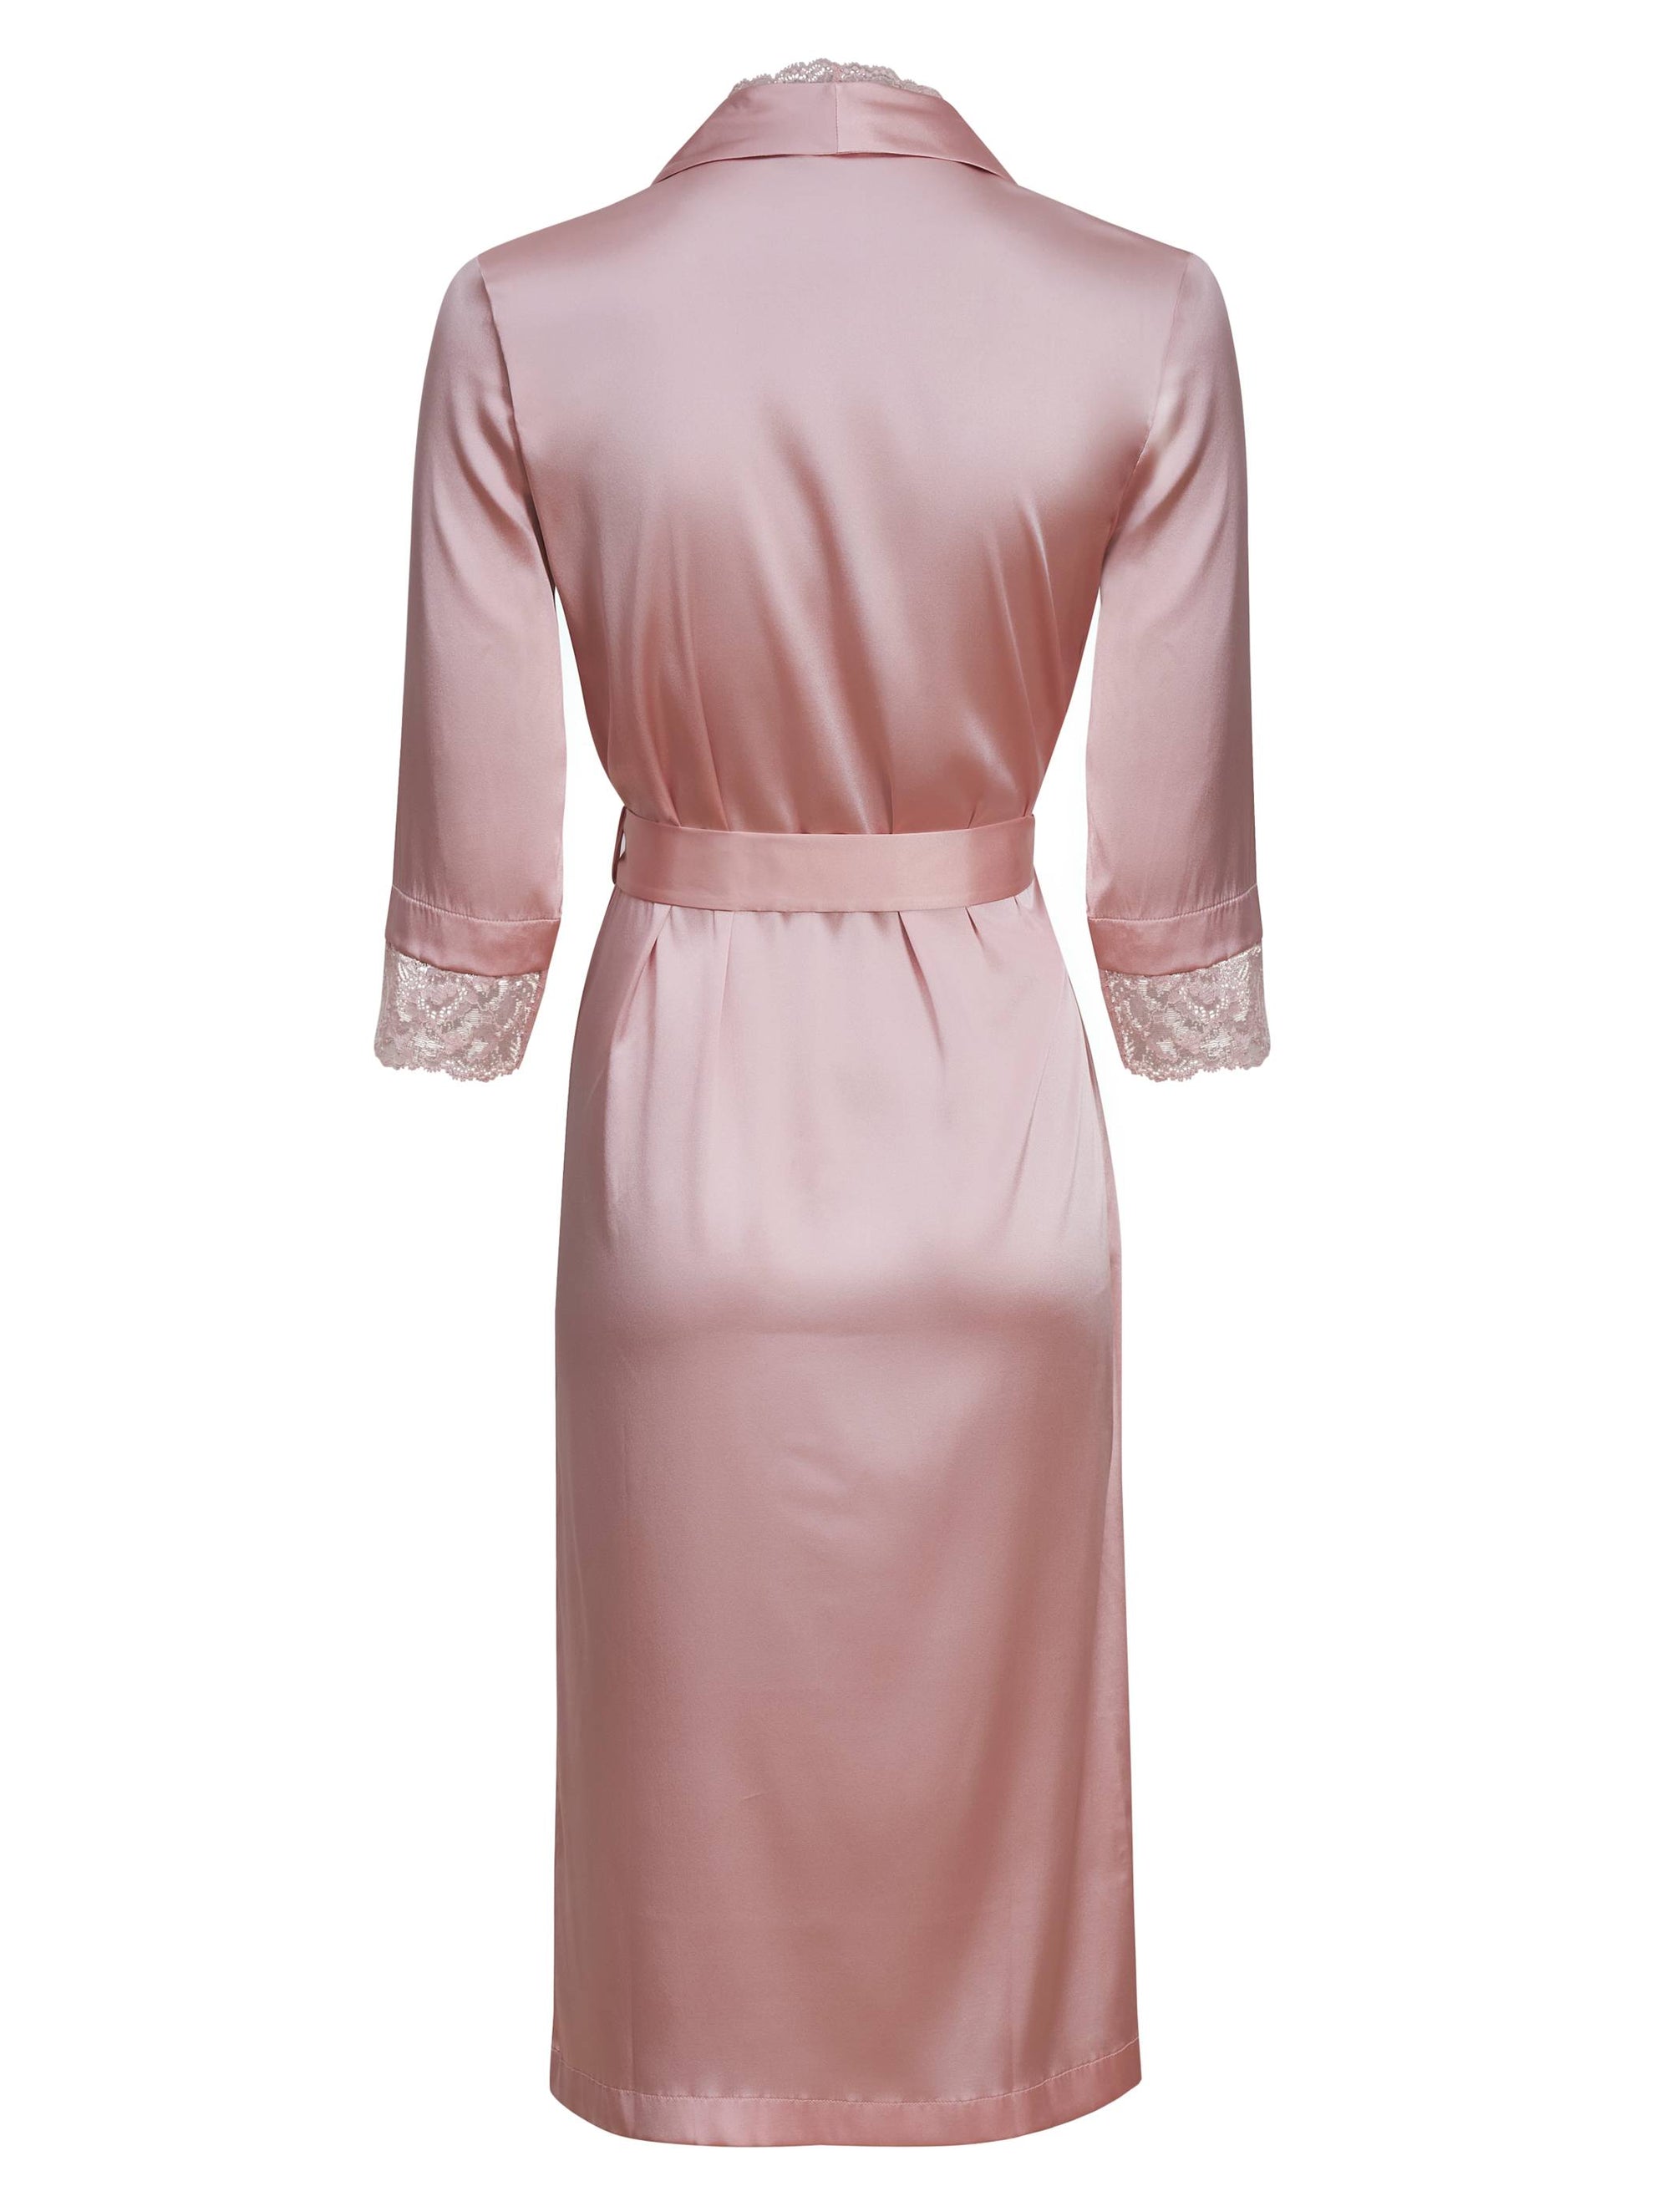 Adele silk negligee - Pink Powder